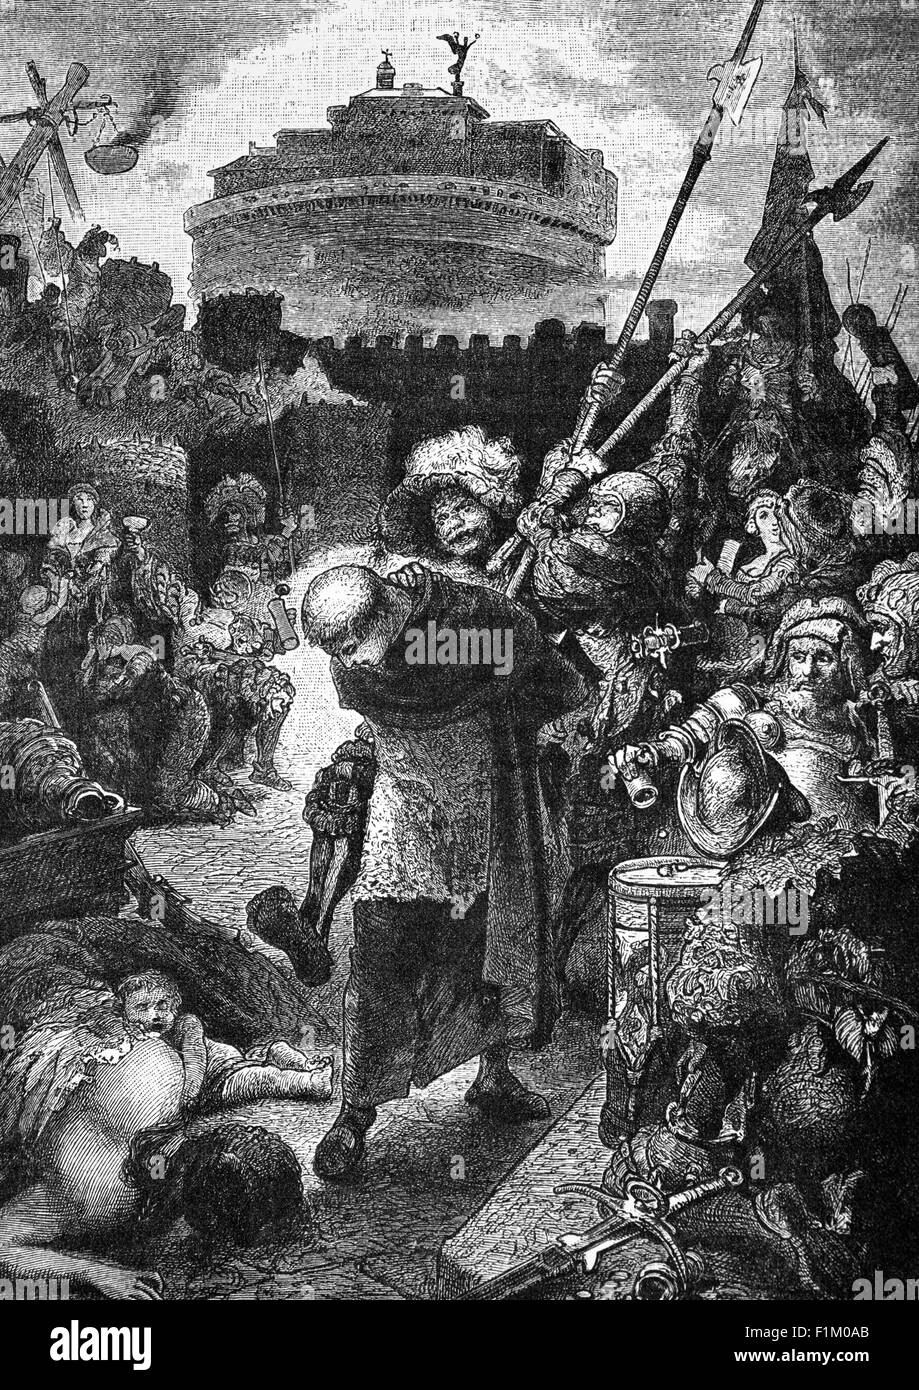 Les débardeurs allemands à Rome. Les langoudis étaient des mercenaires germanophones utilisés dans les formations de brochets et de greniers qui formaient la majeure partie de l'Armée impériale de l'Empire romain Saint de la fin du 1400 au début du 1600. Banque D'Images